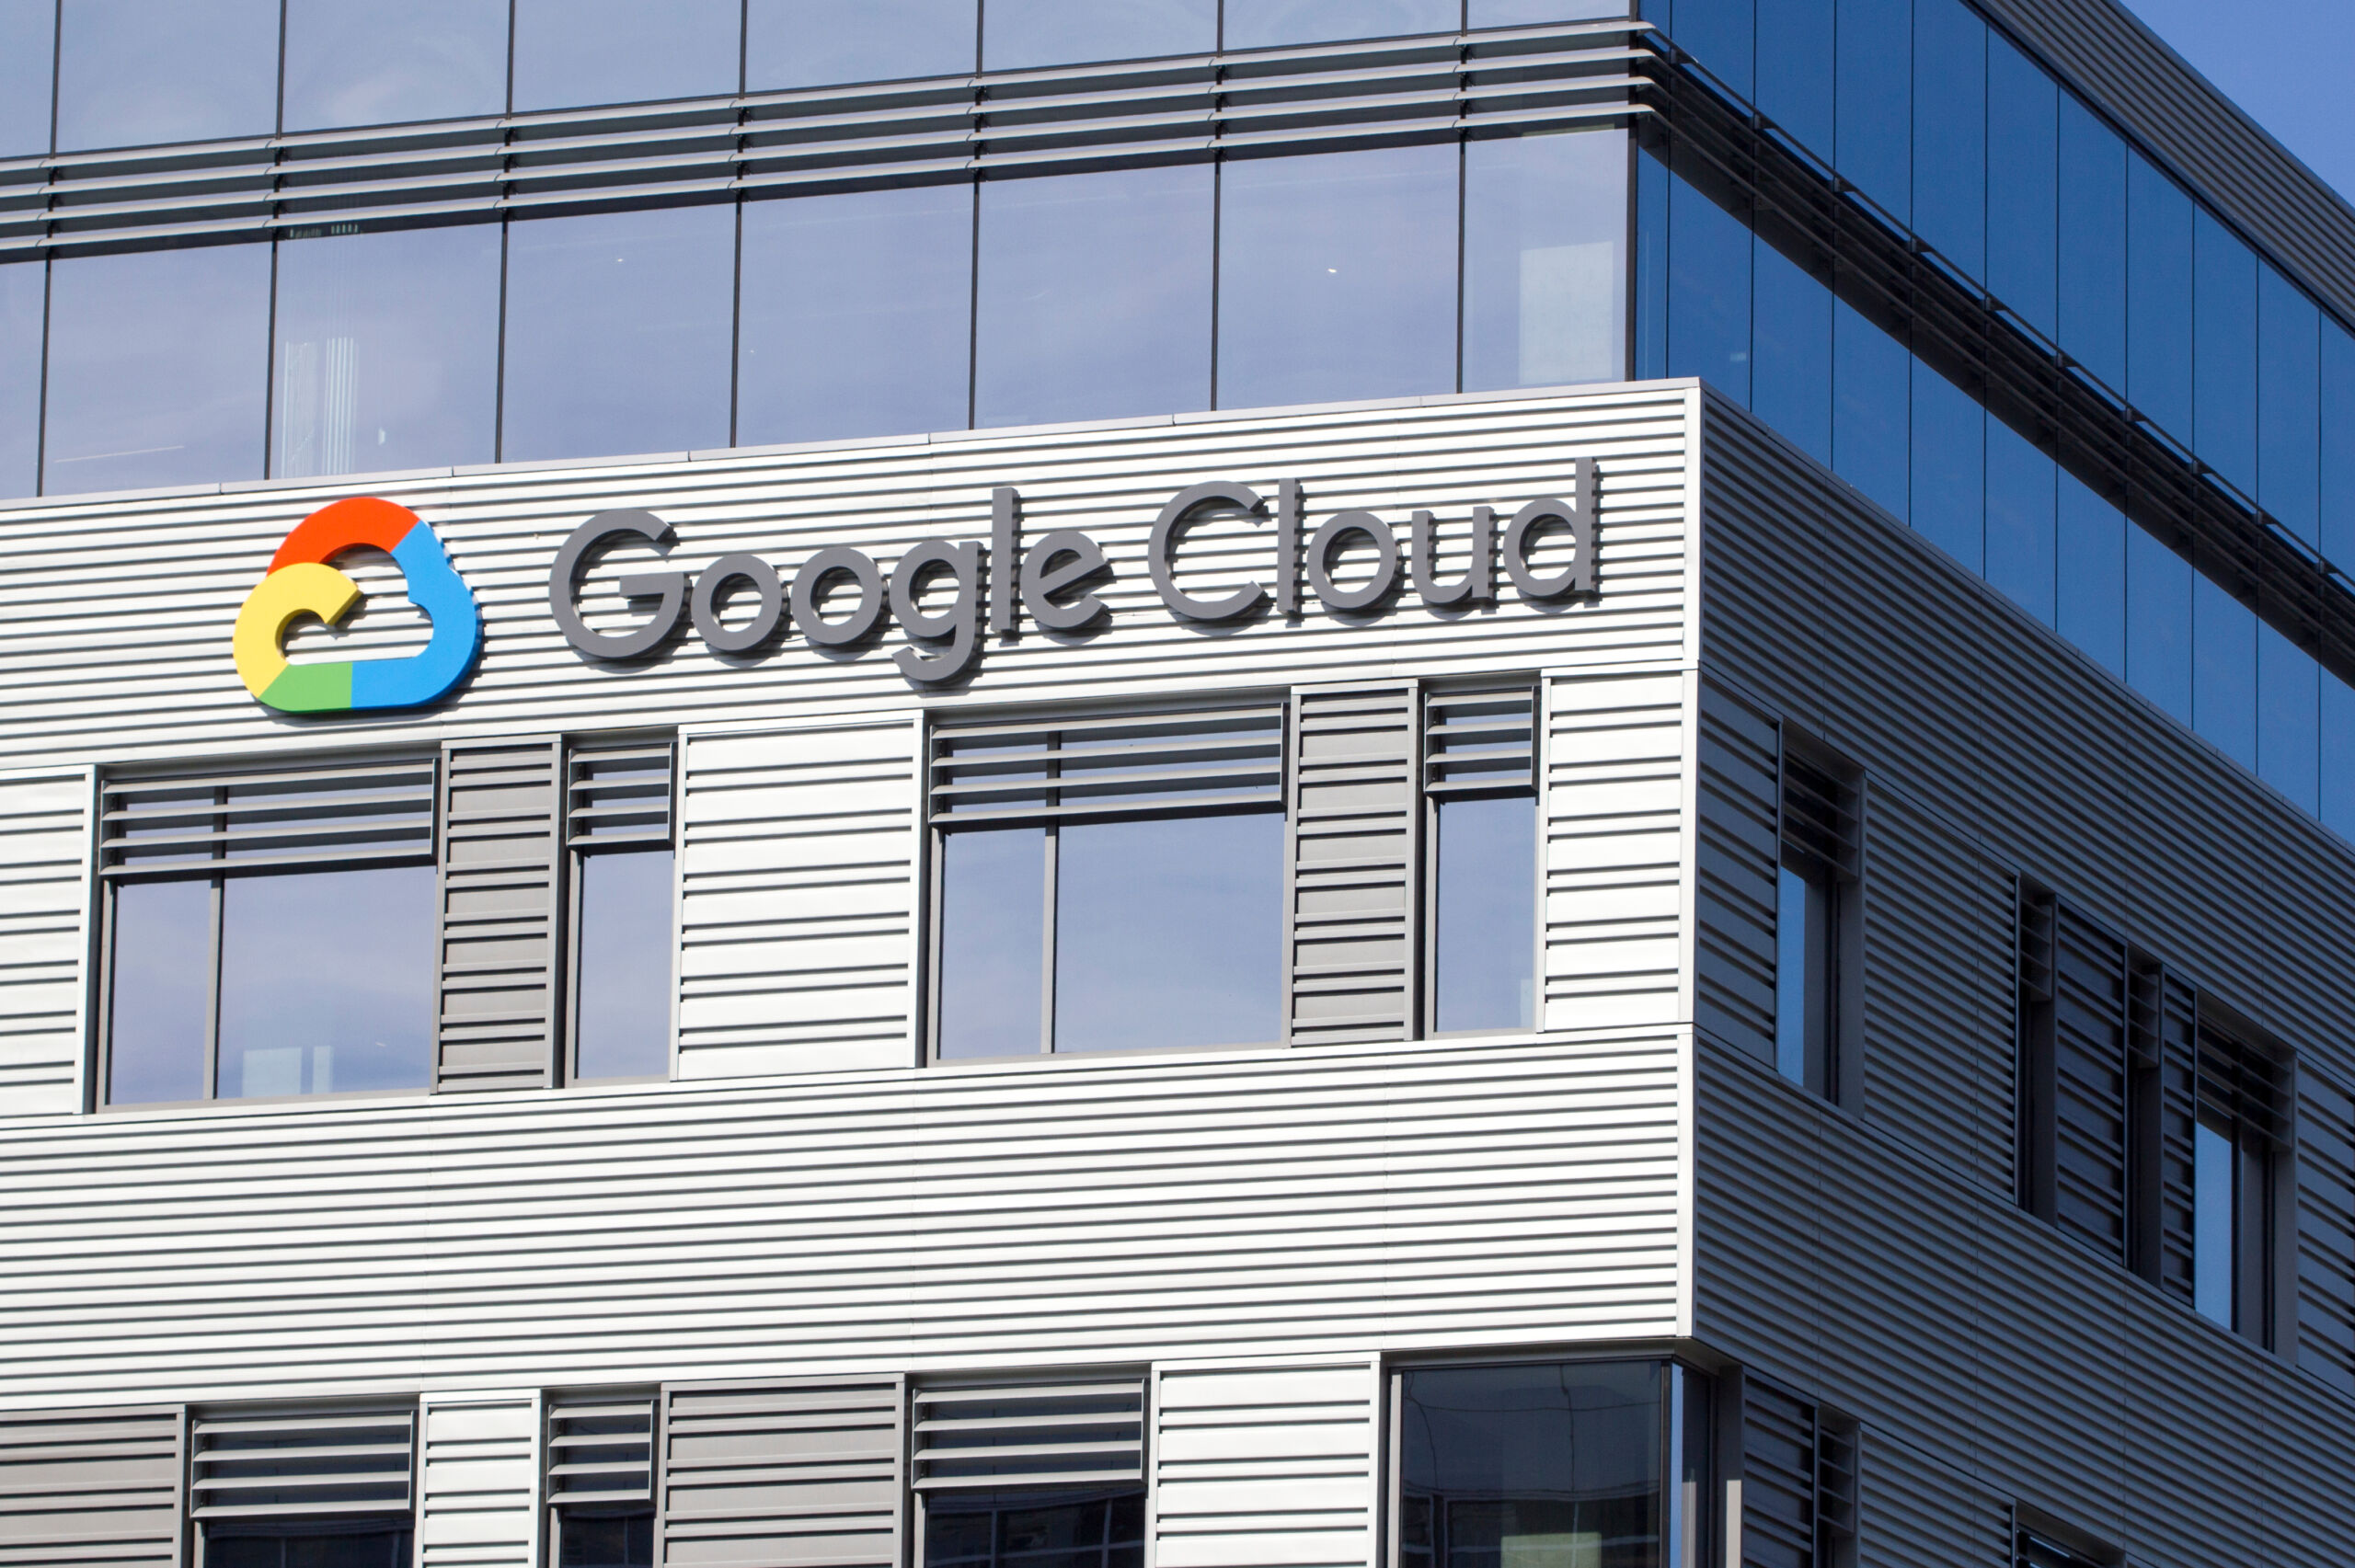 Google Cloud Platform to wiele us艂ug pomagaj膮cych tworzy膰 us艂ugi i aplikacje